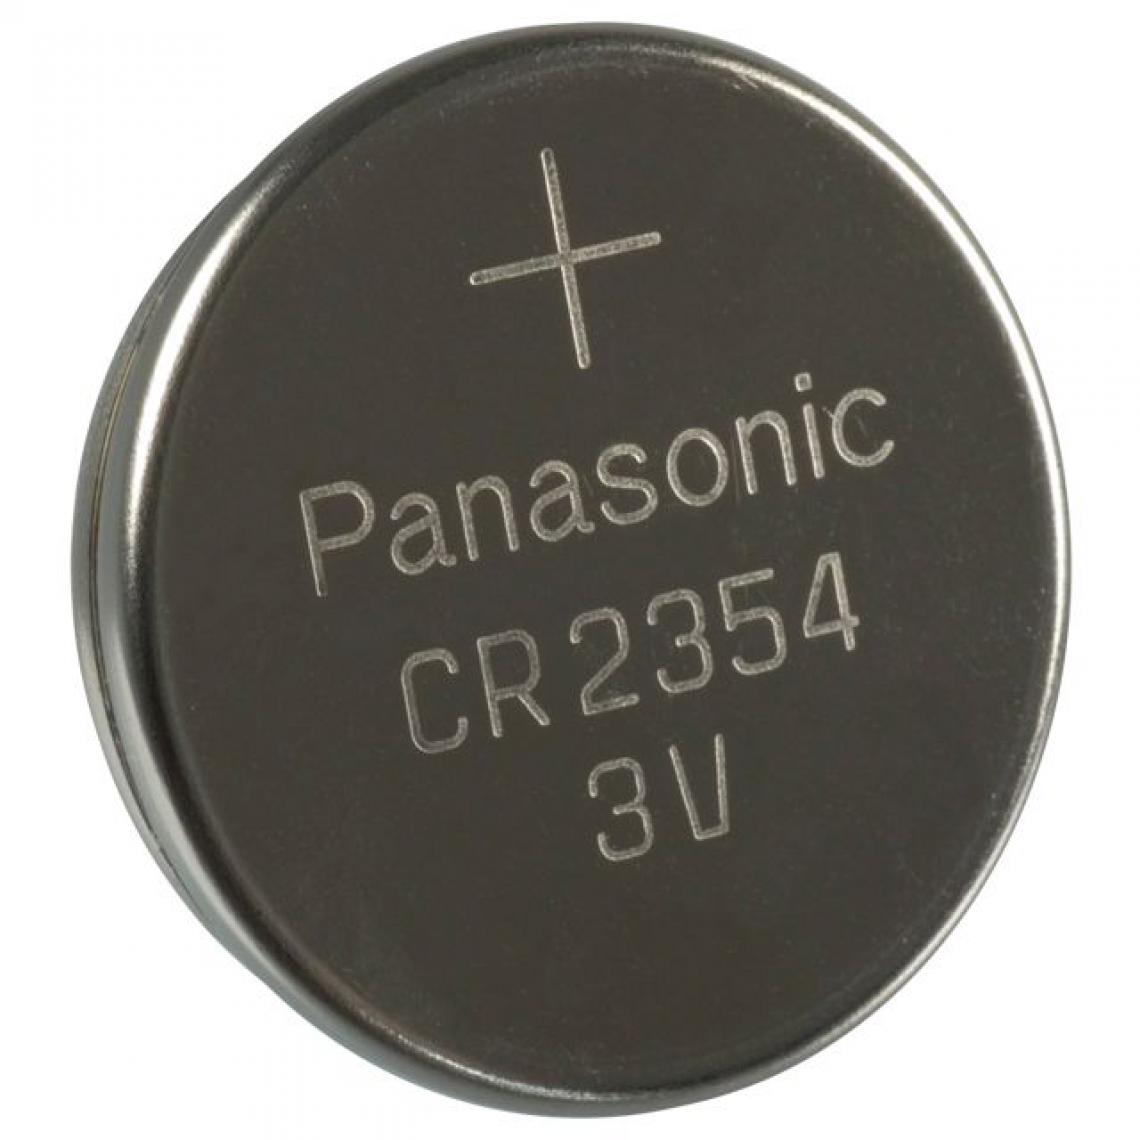 Panasonic - Rasage Electrique - Pile bouton PANASONIC CR2354 3V - Piles rechargeables